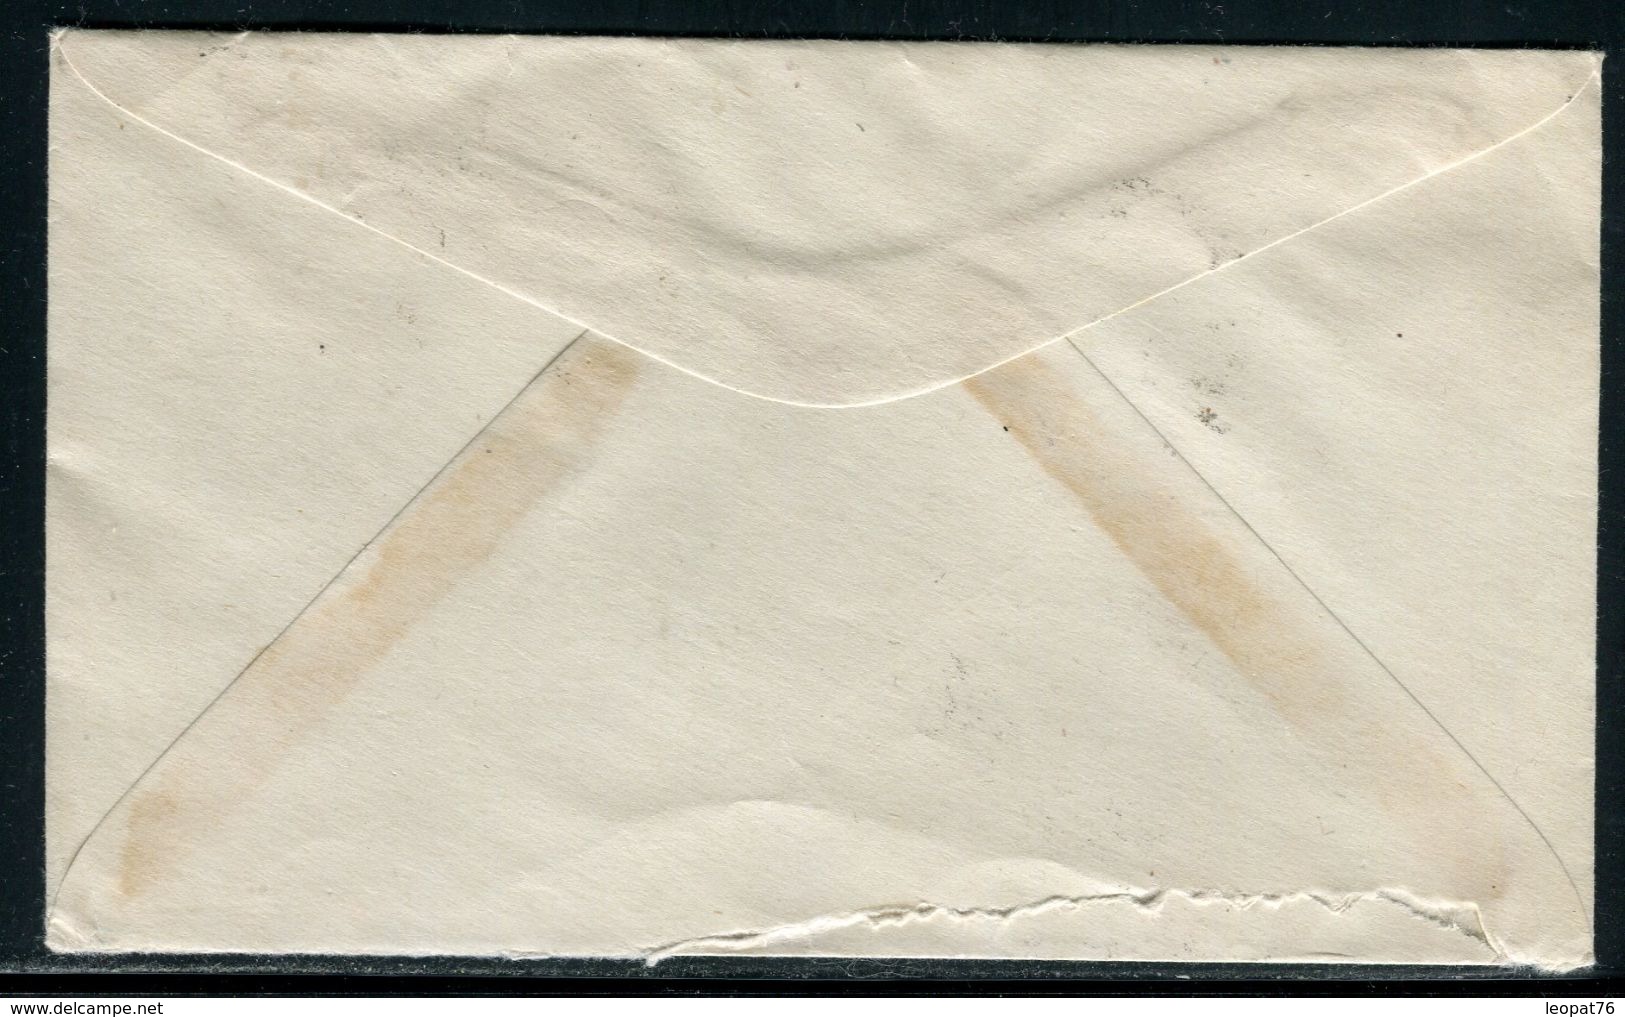 Saint Pierre Et Miquelon - Enveloppe Pour Paris En 1951 - Ref D174 - Covers & Documents